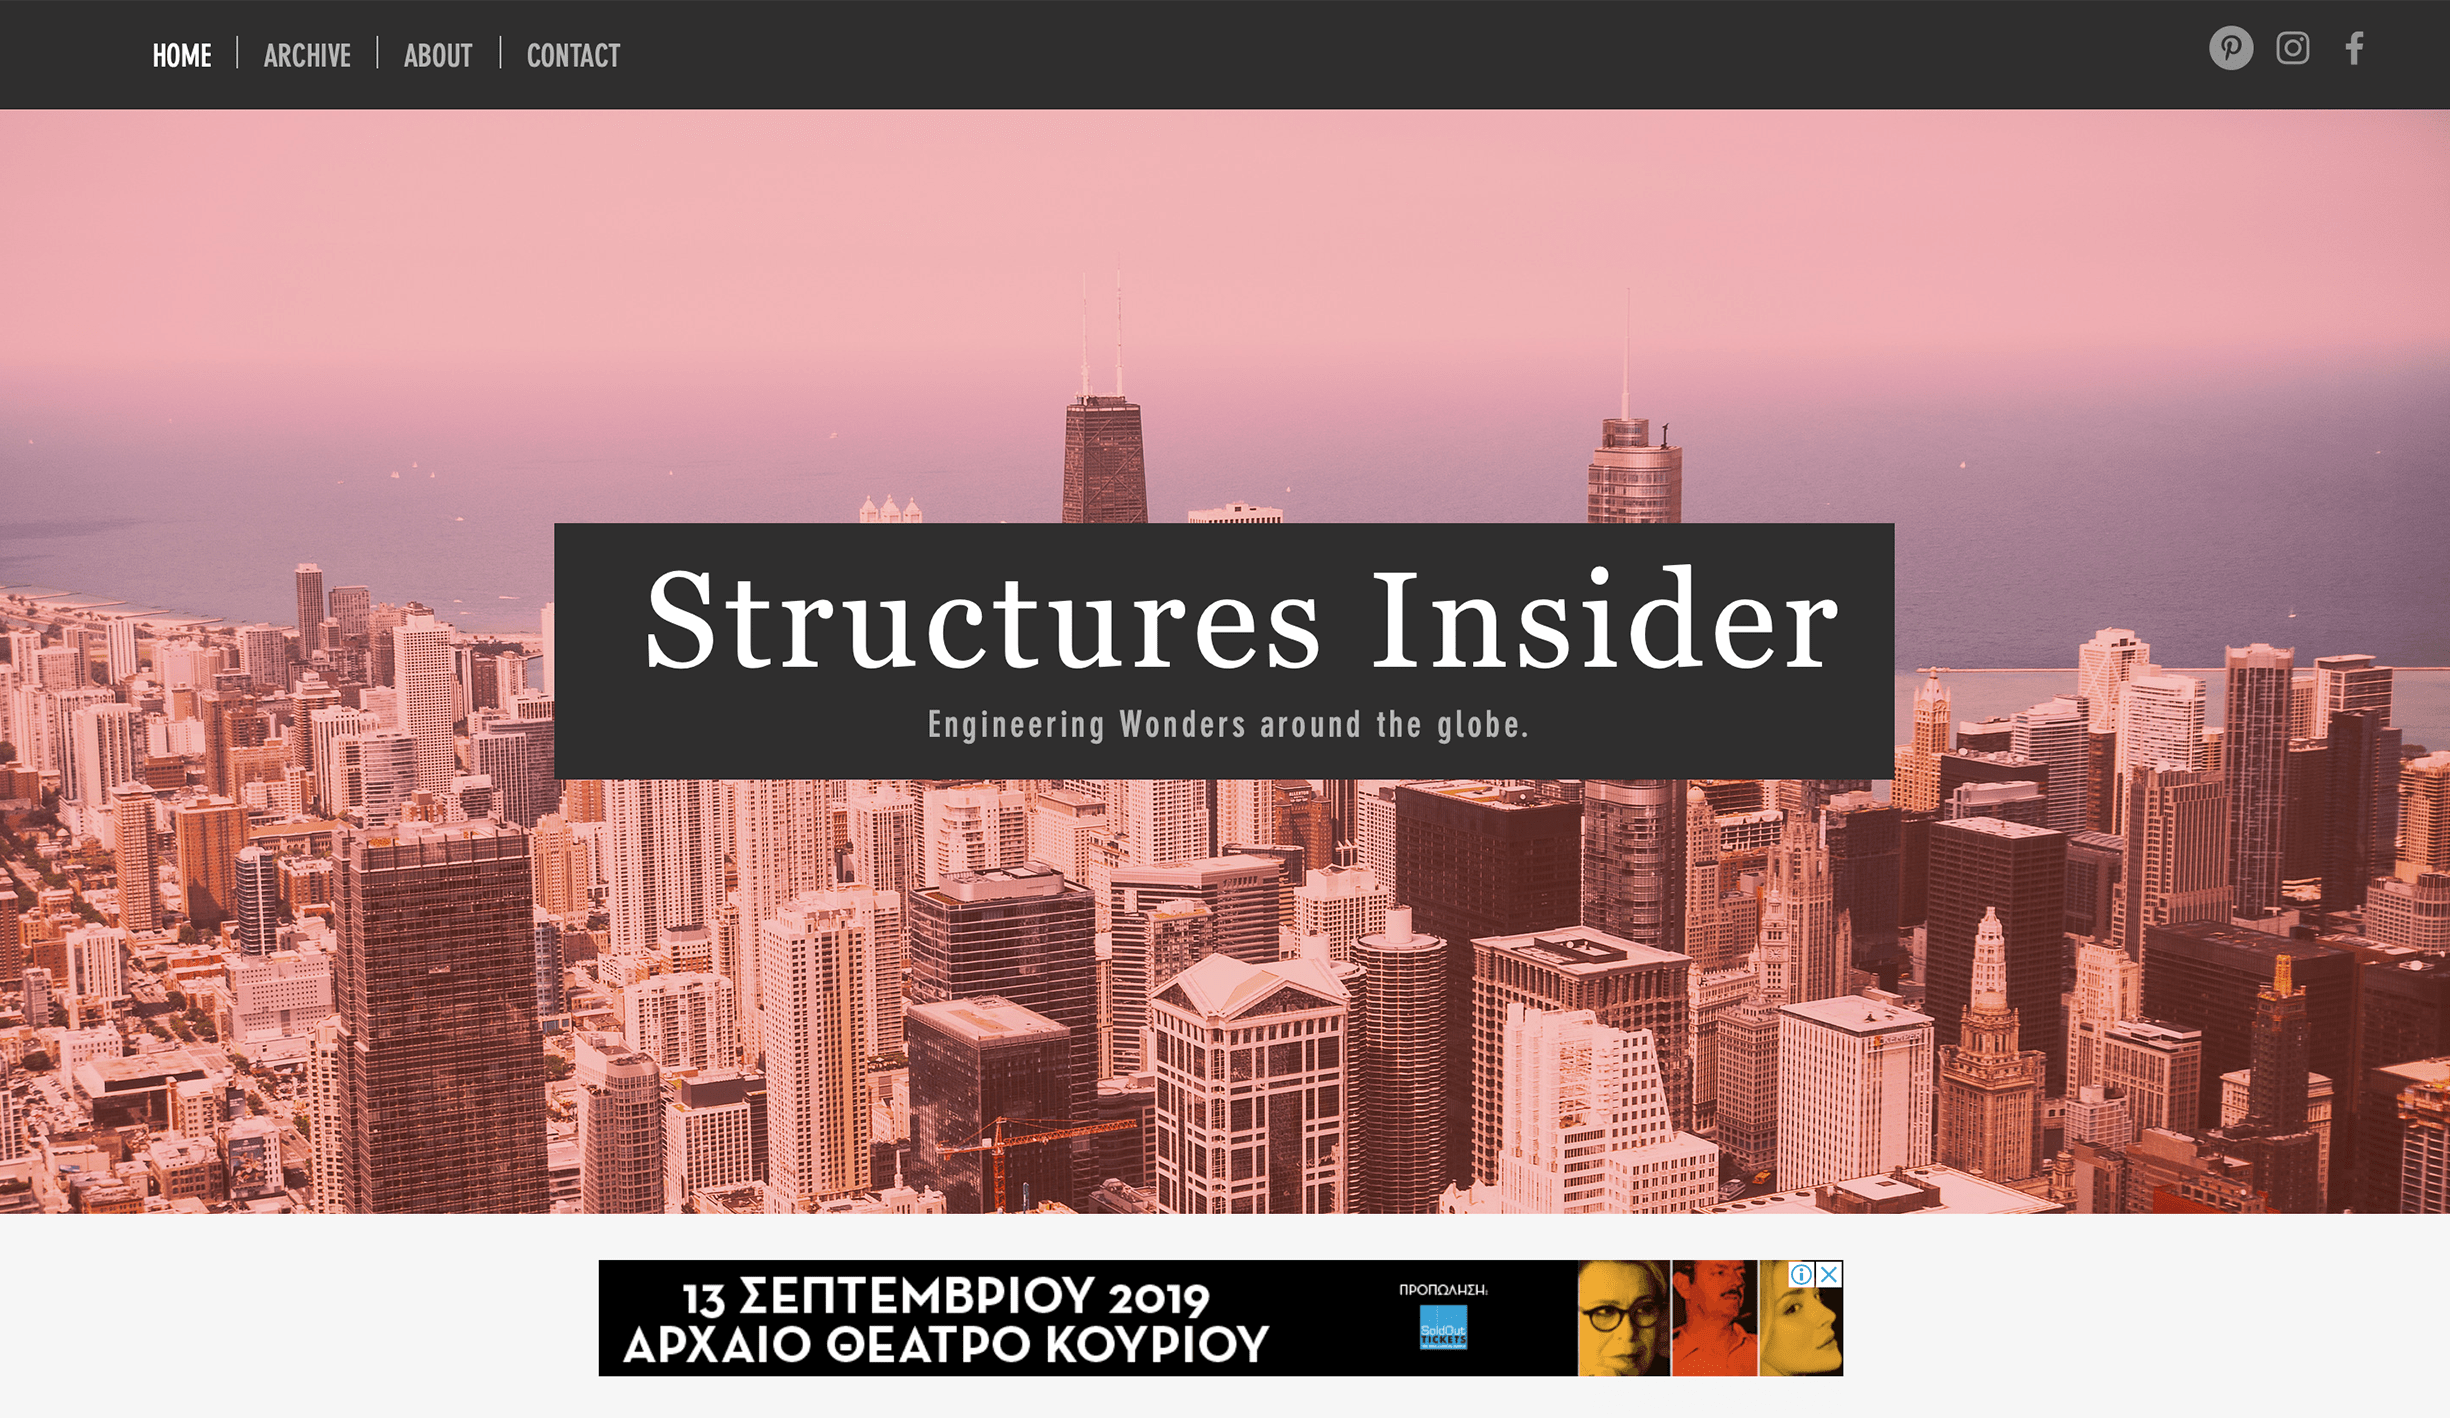 Structures Insider details